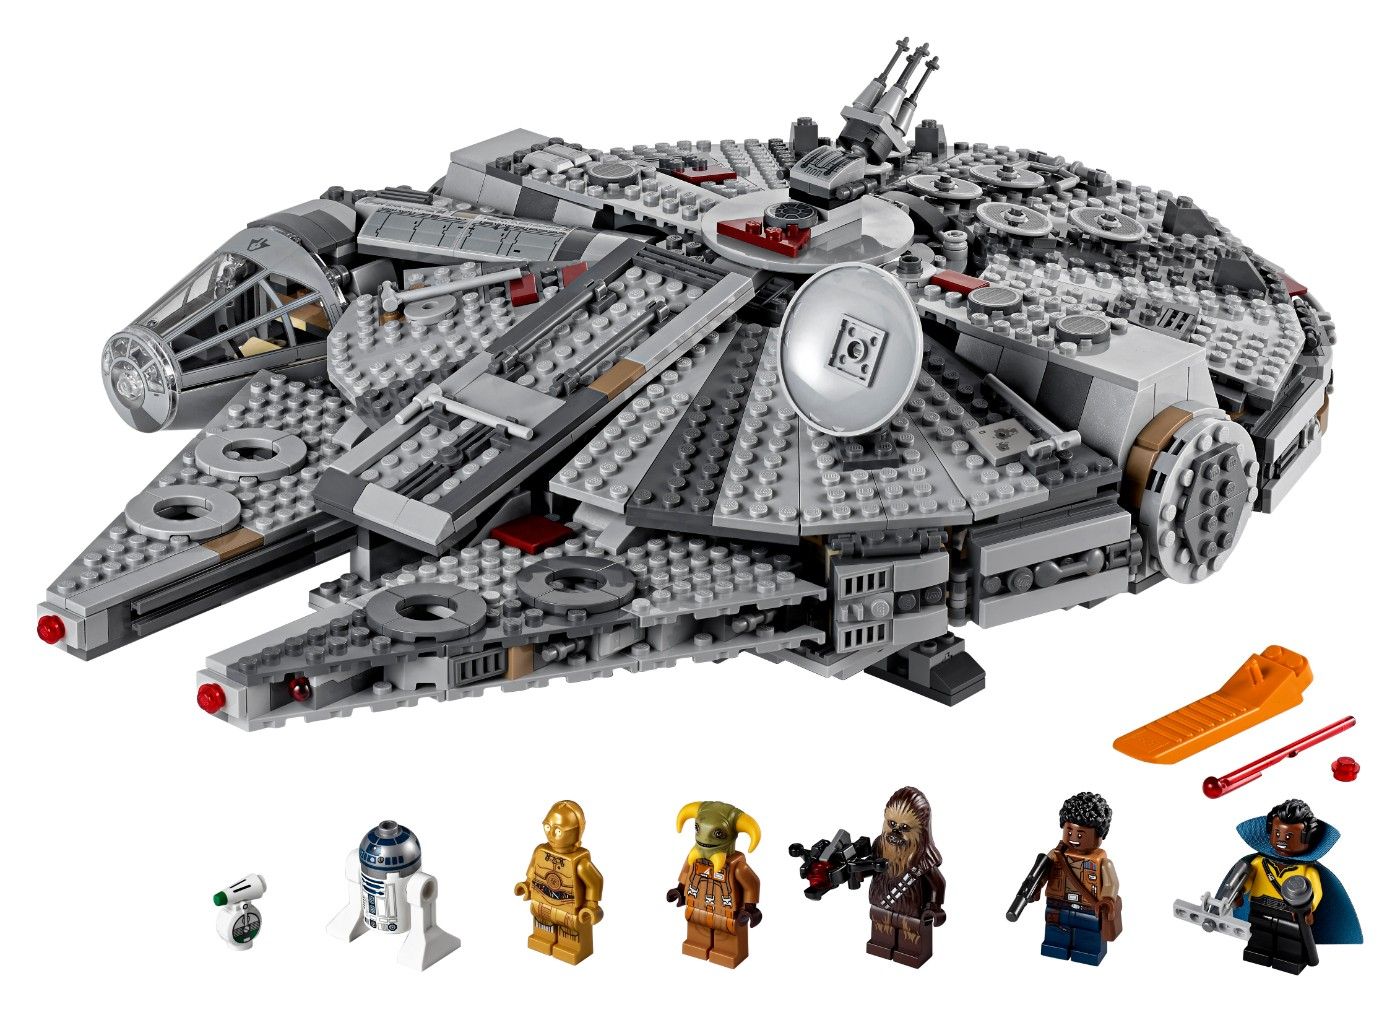 Star Wars 9 Lego Millennium Falcon Set